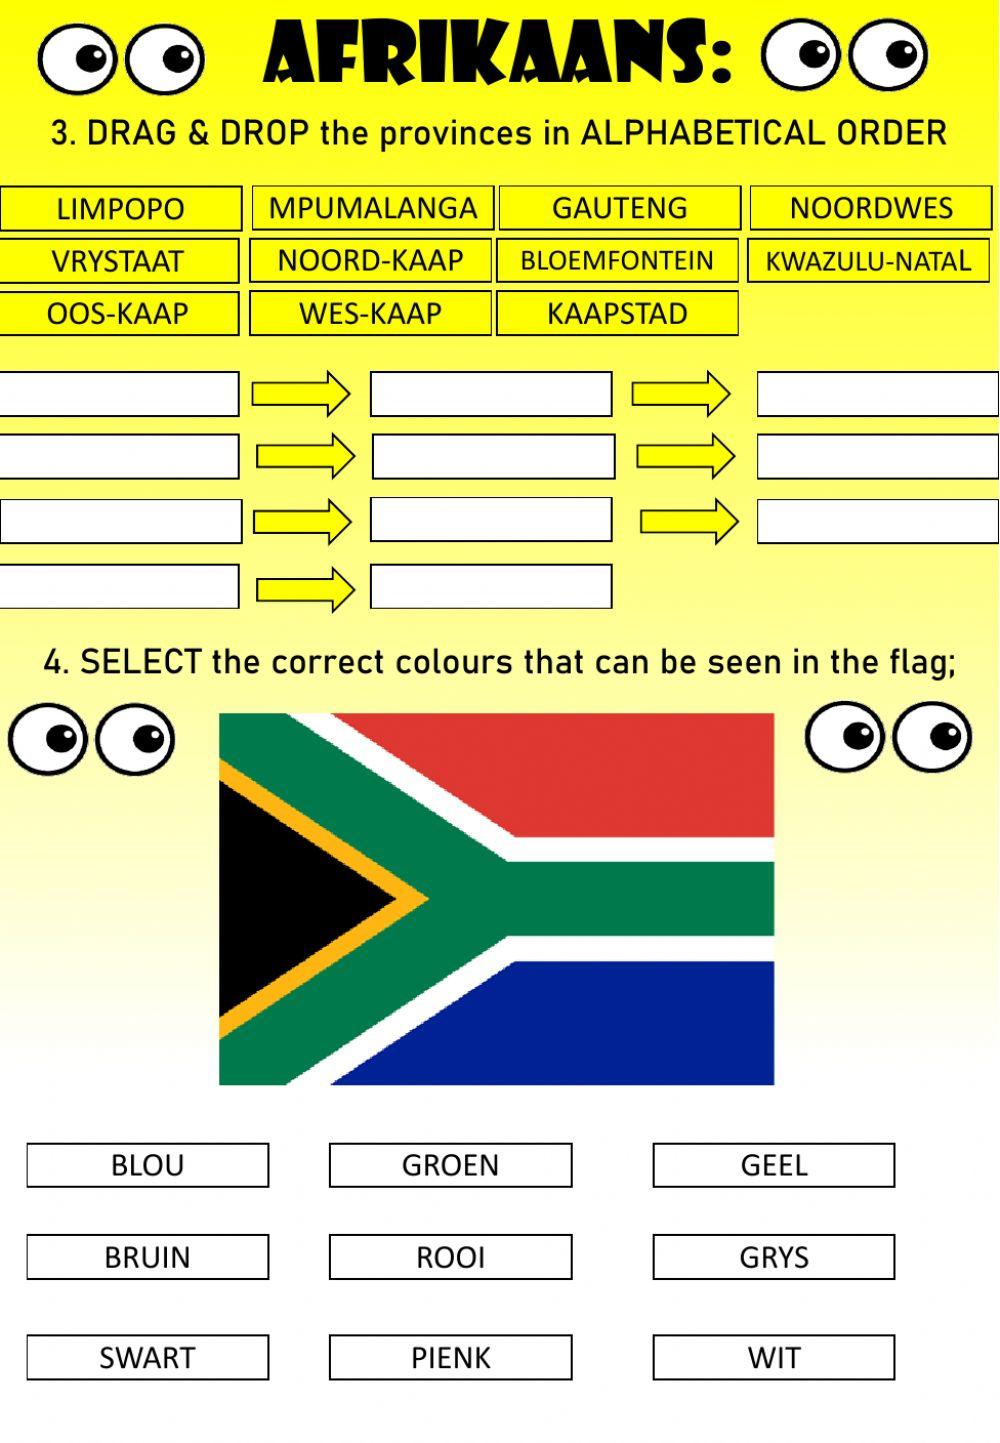 WEEK 20: MONDAY: Suid Afrika